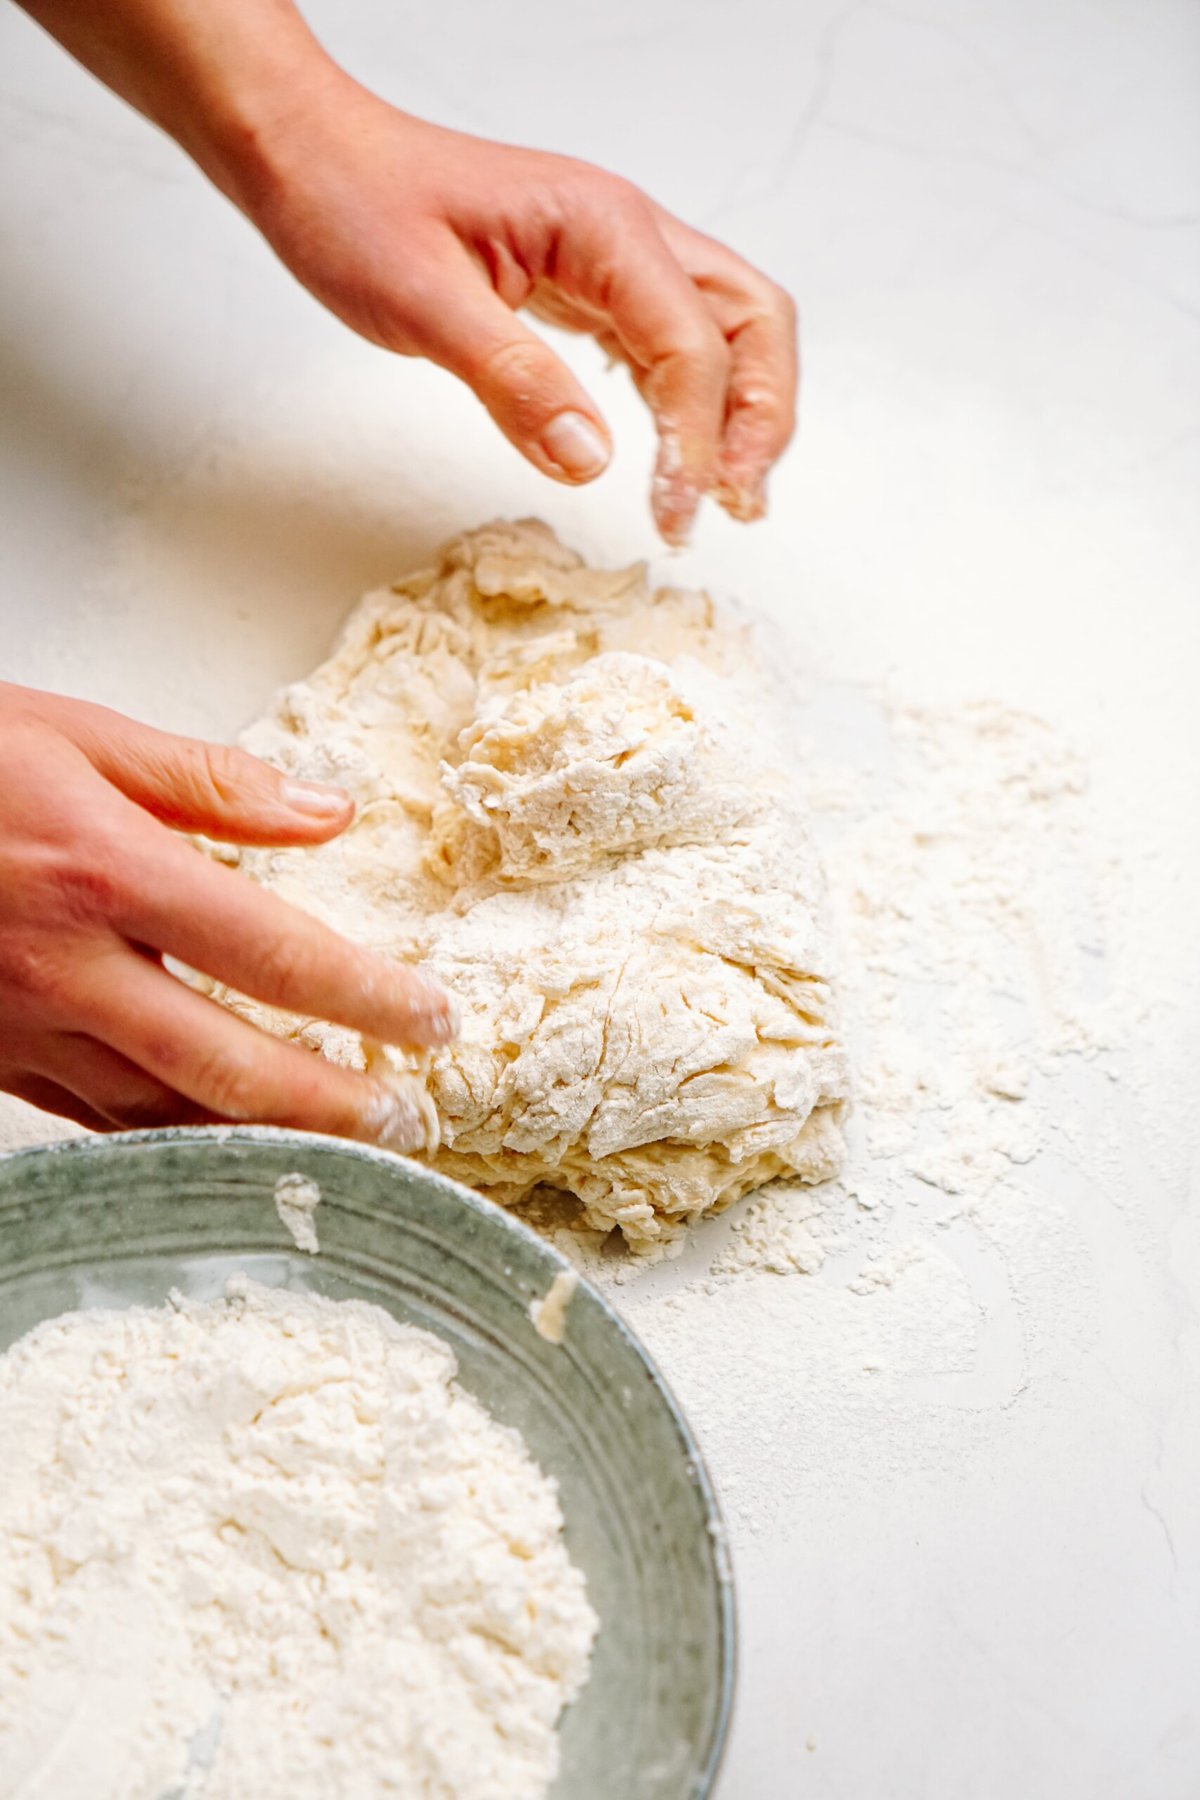 a person kneading dough on a floured counter